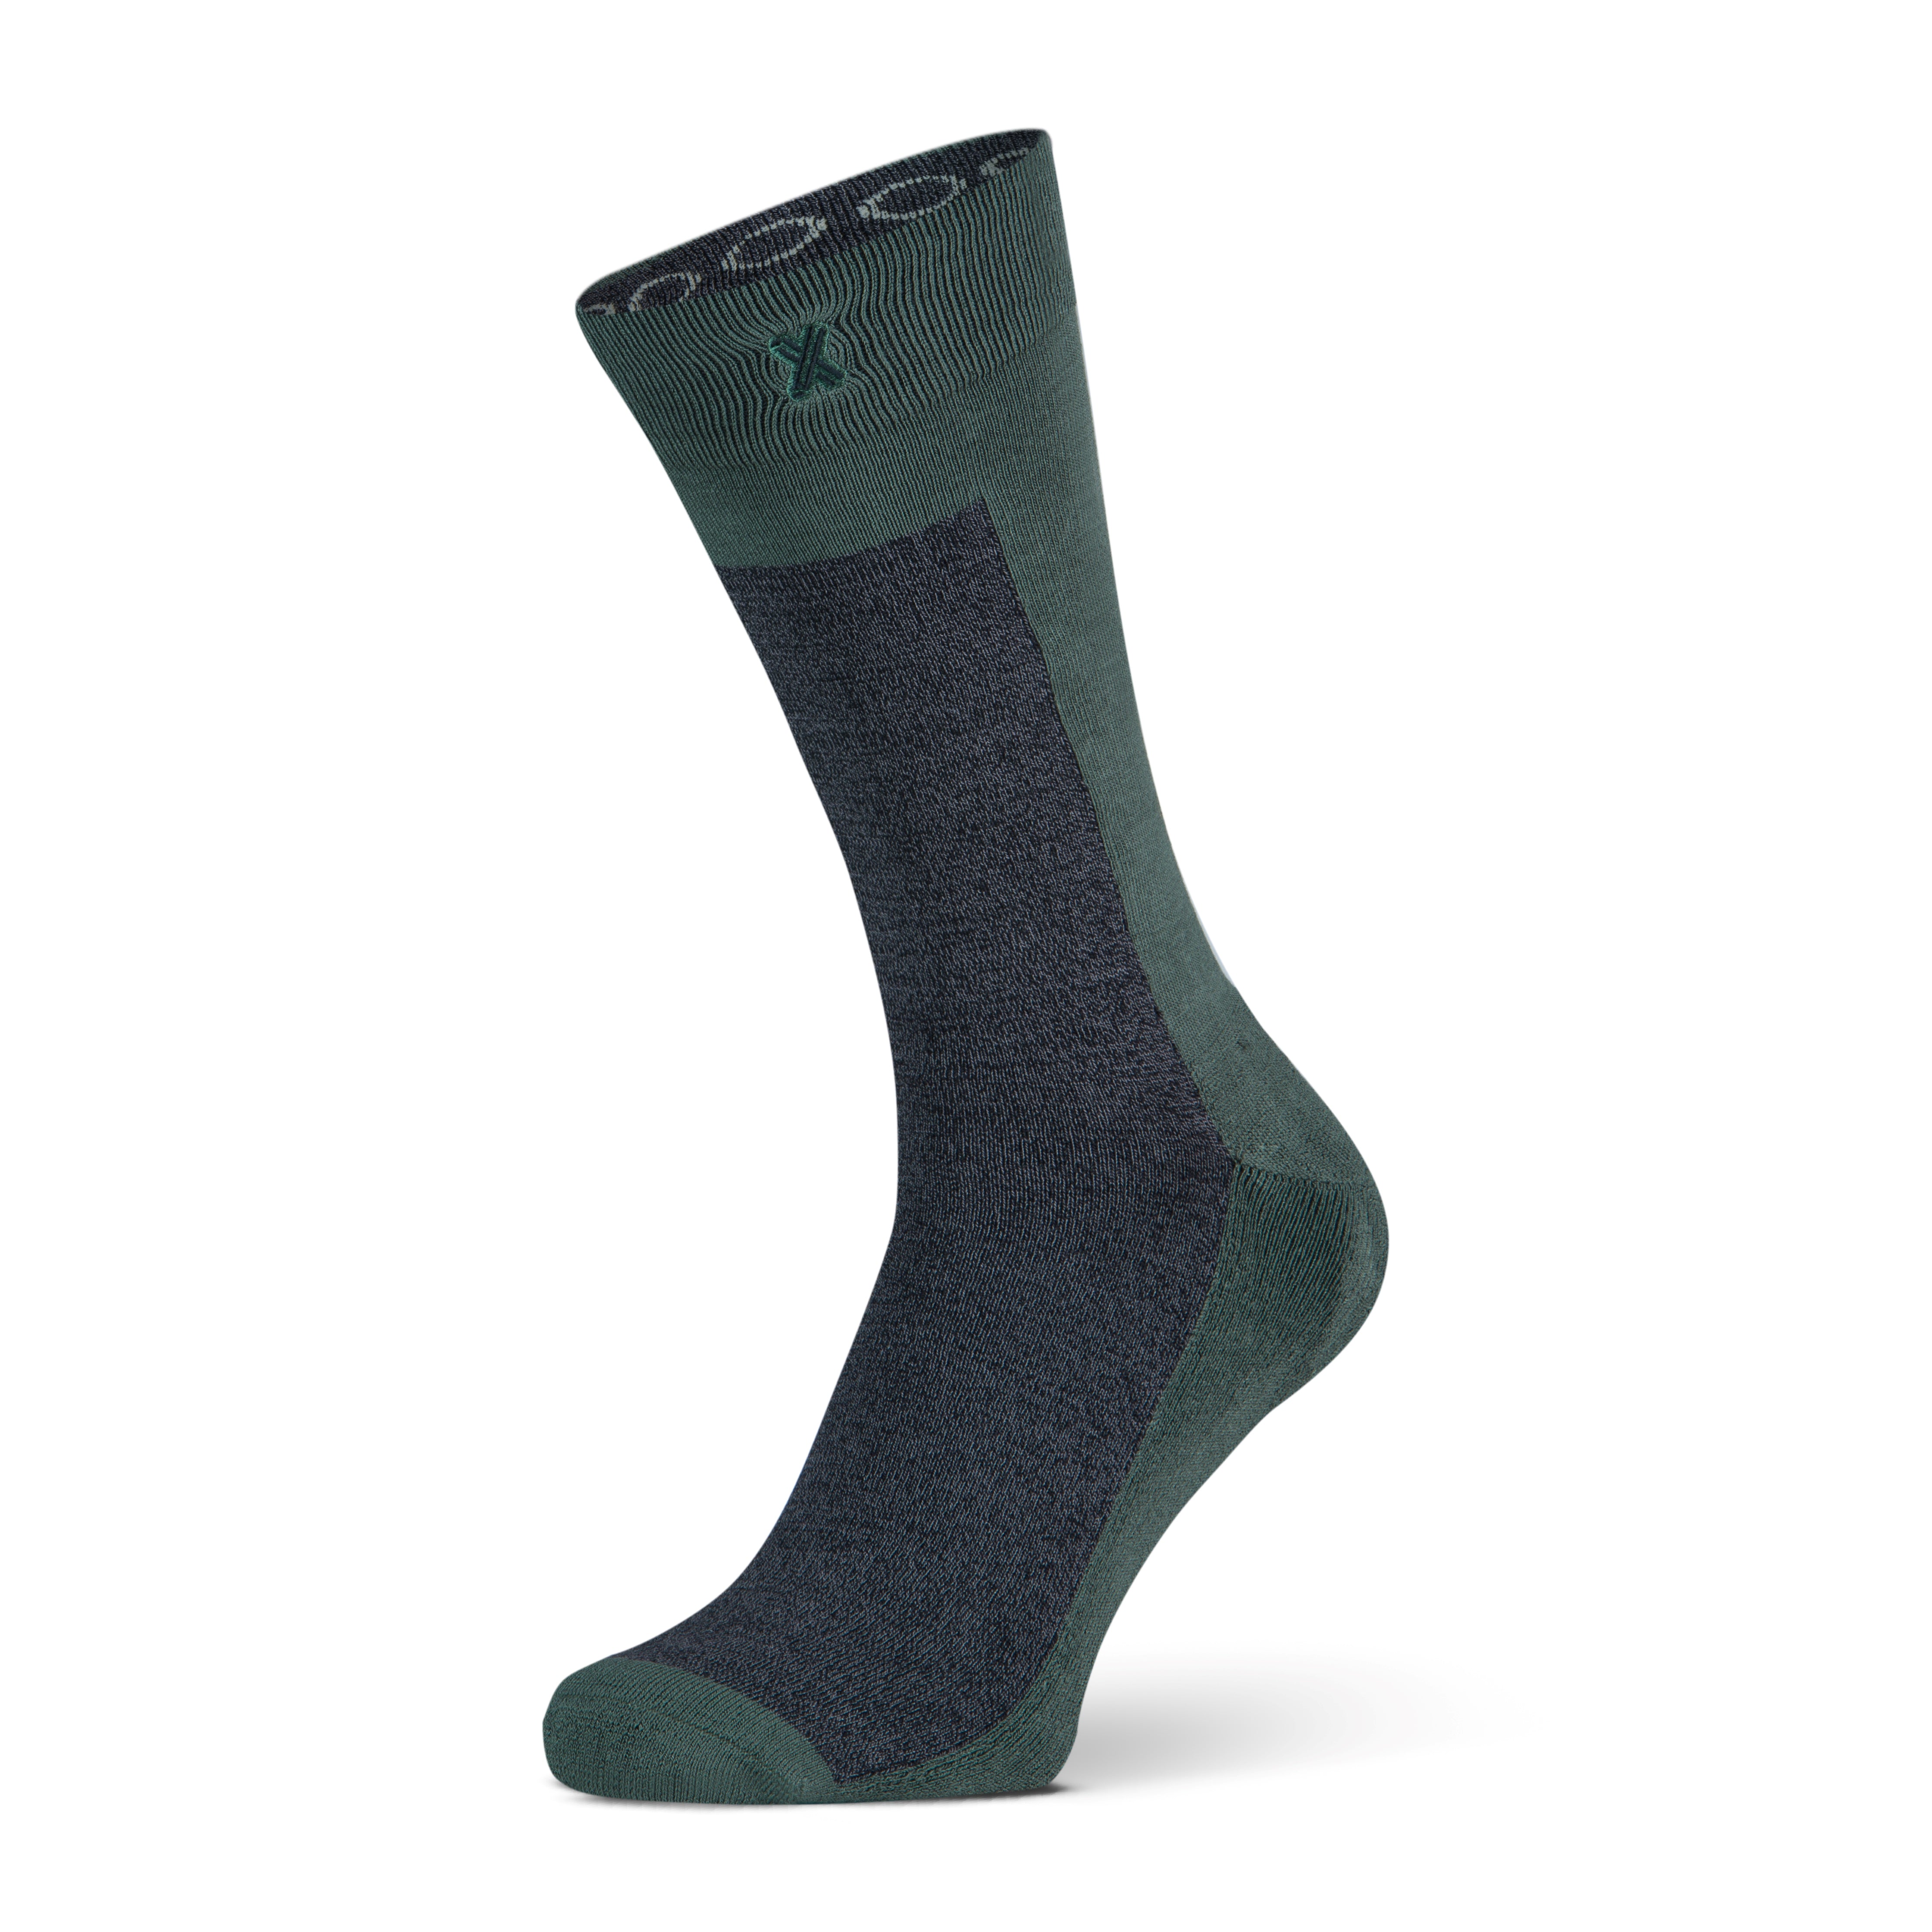 New York men's socks Green